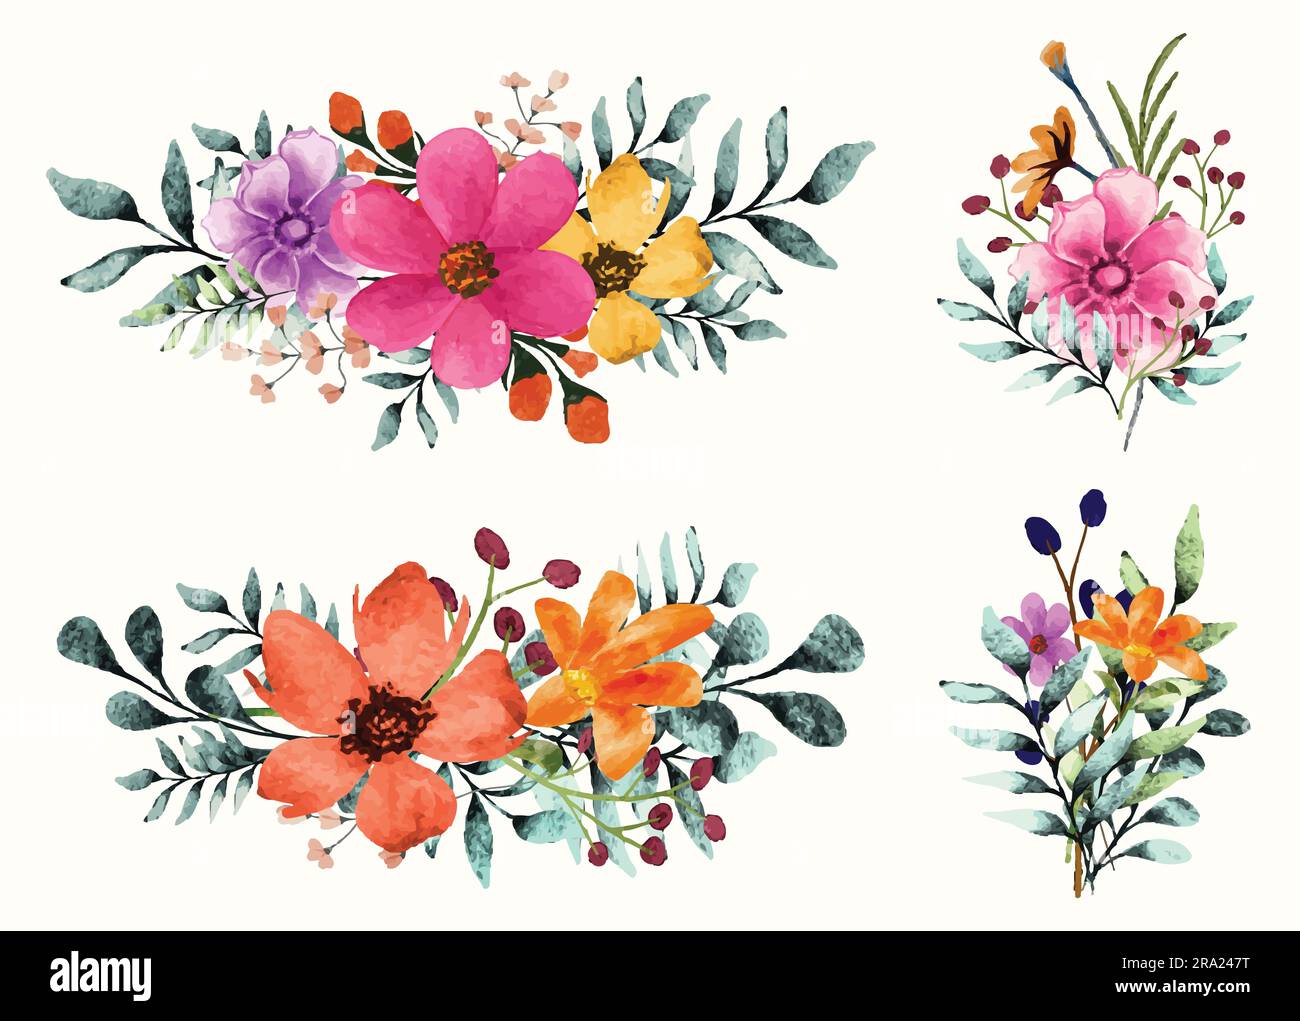 Aquarelle peinture bouquet de fleurs sauvages illustration sur fond isolé Illustration de Vecteur